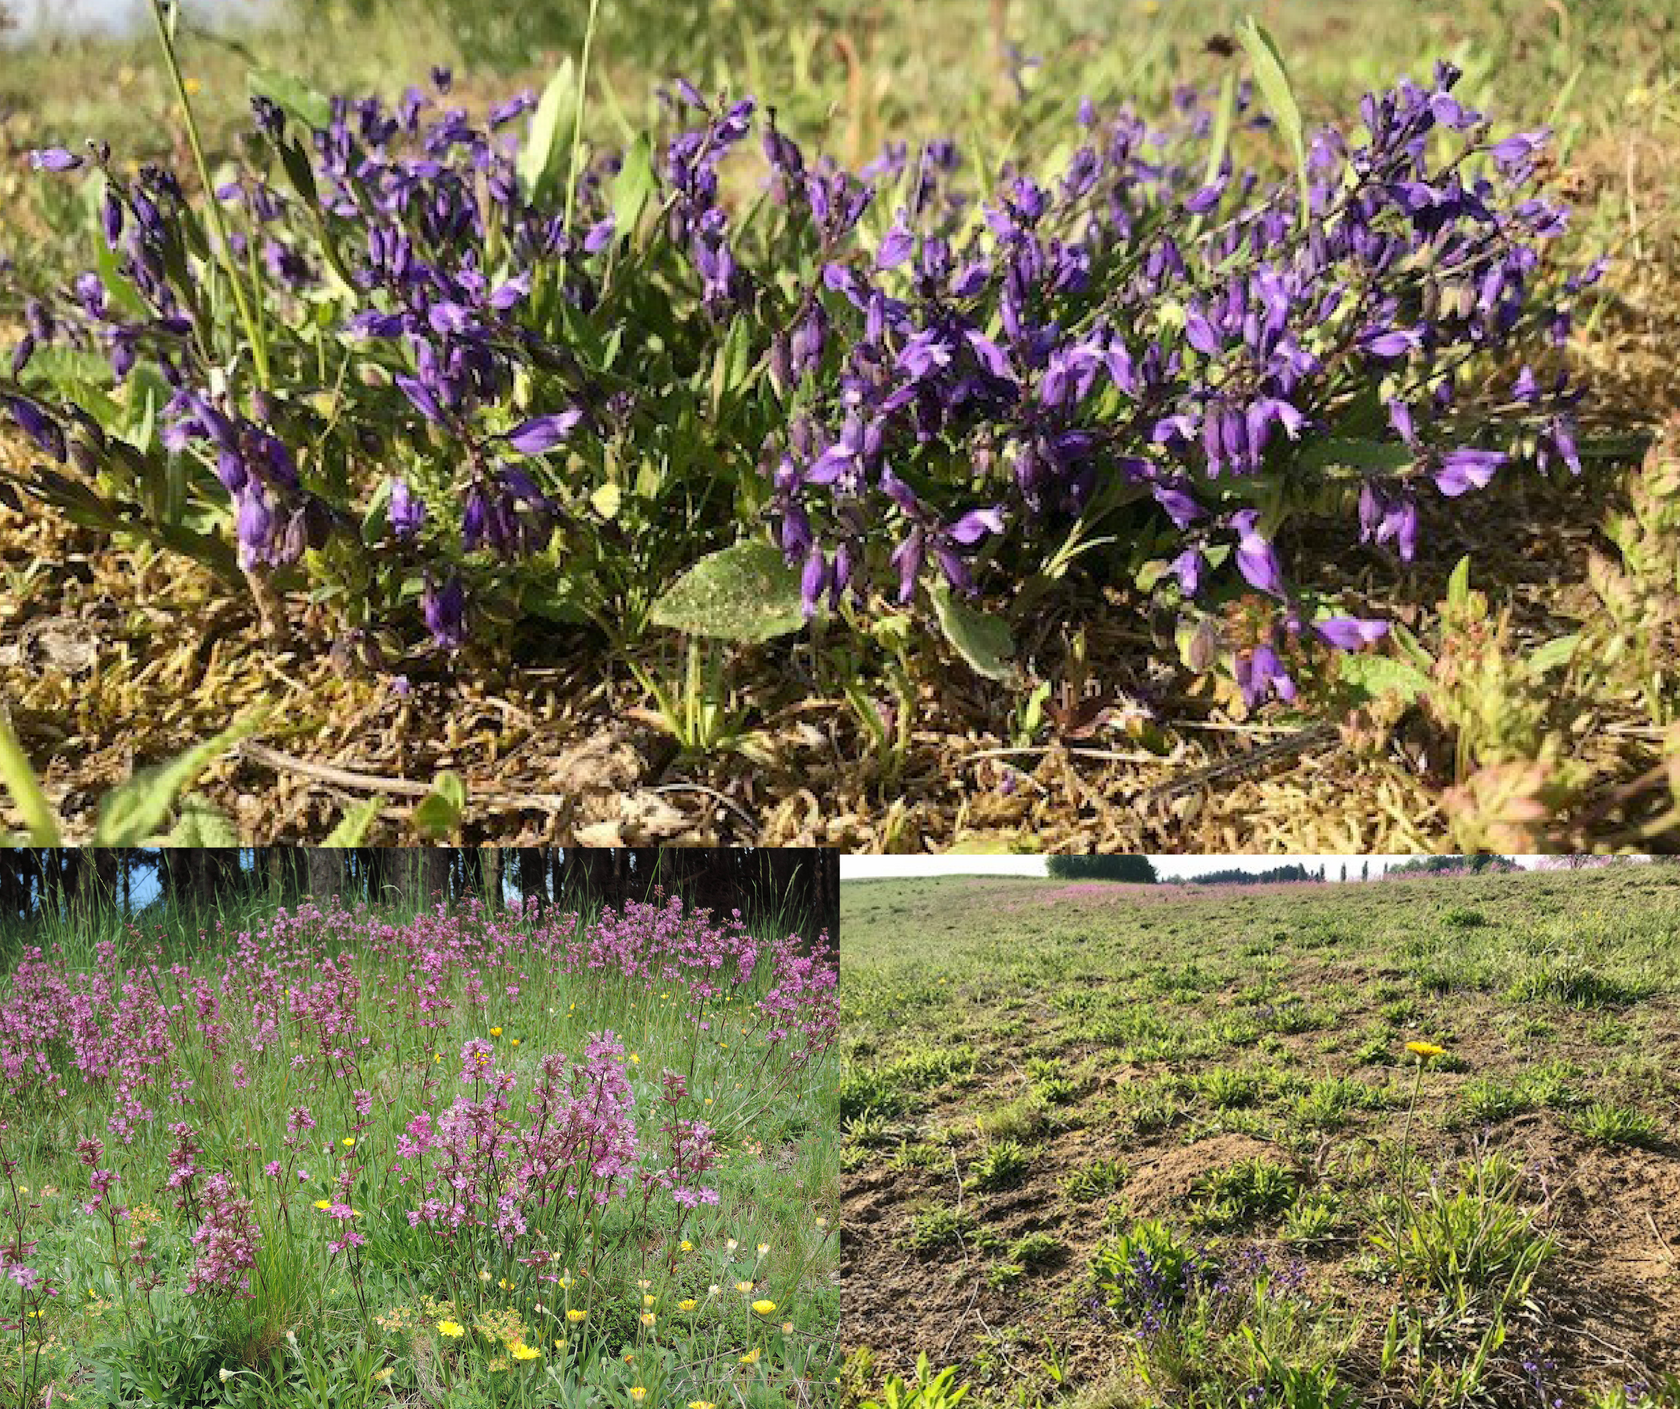 alt="oben: Pechnelke (Lychnis viscaria), links: Kreuzblümchen (Polygala vulgaris), rechts: Offene, sandige Bodenbereiche bieten einen idealen Lebensraum für Insekten, insbesondere für Wildbienen und Laufkäfer."